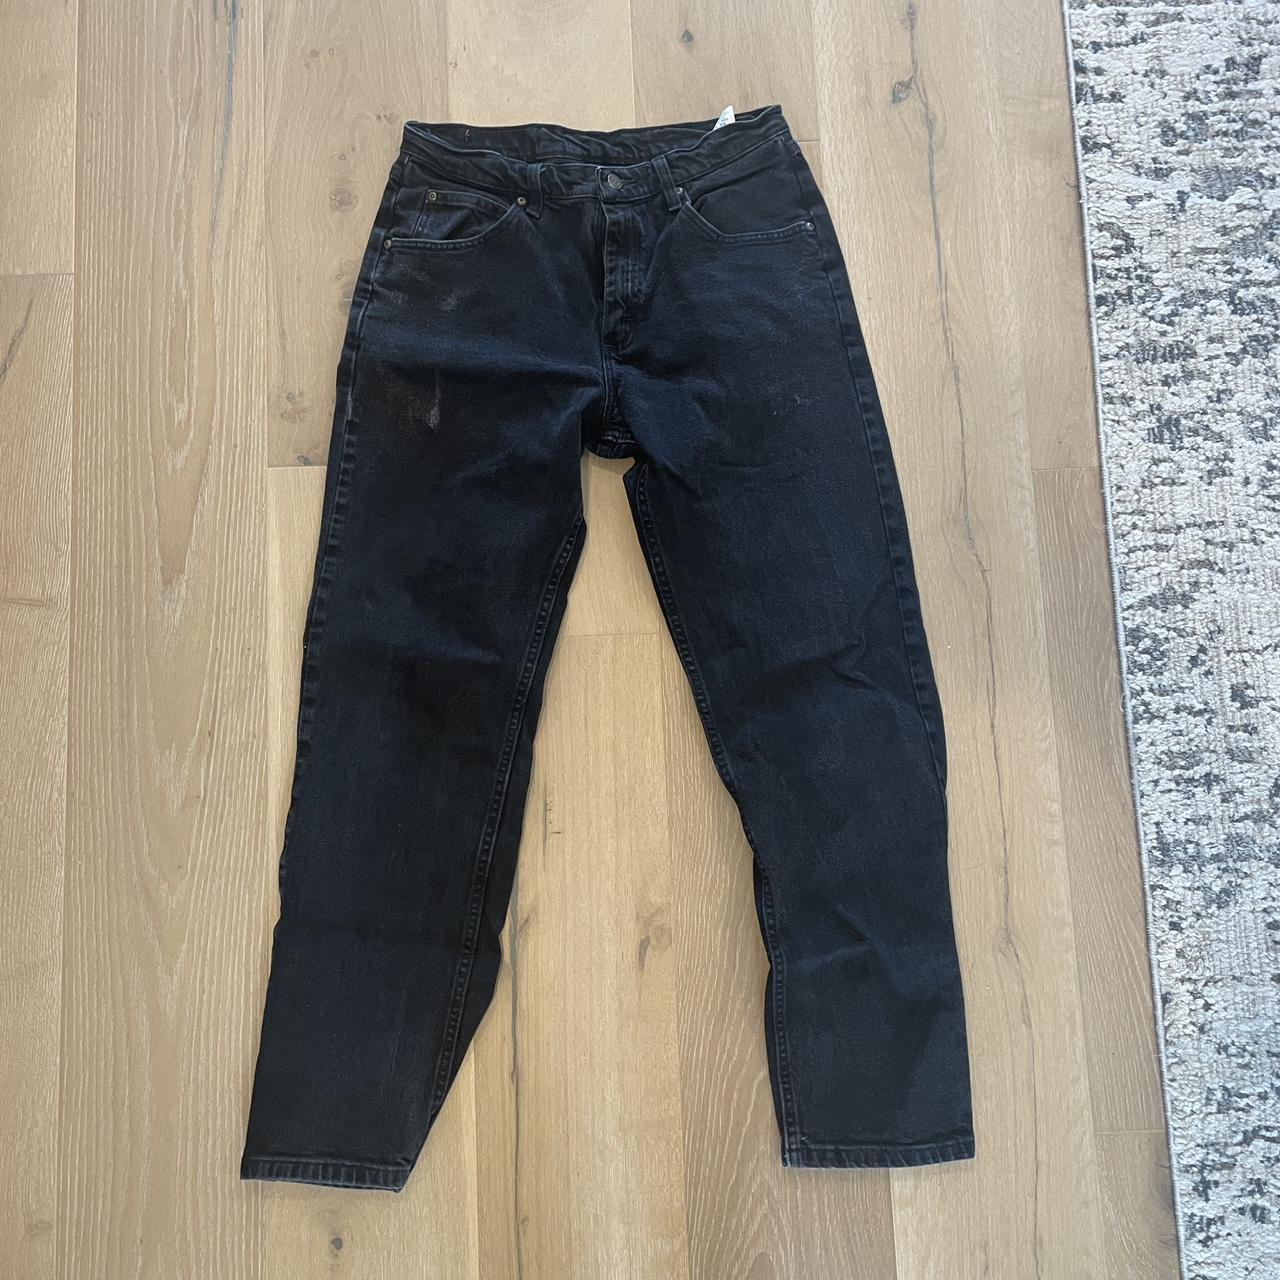 wrangler loose fit black jeans 32/32 - Depop